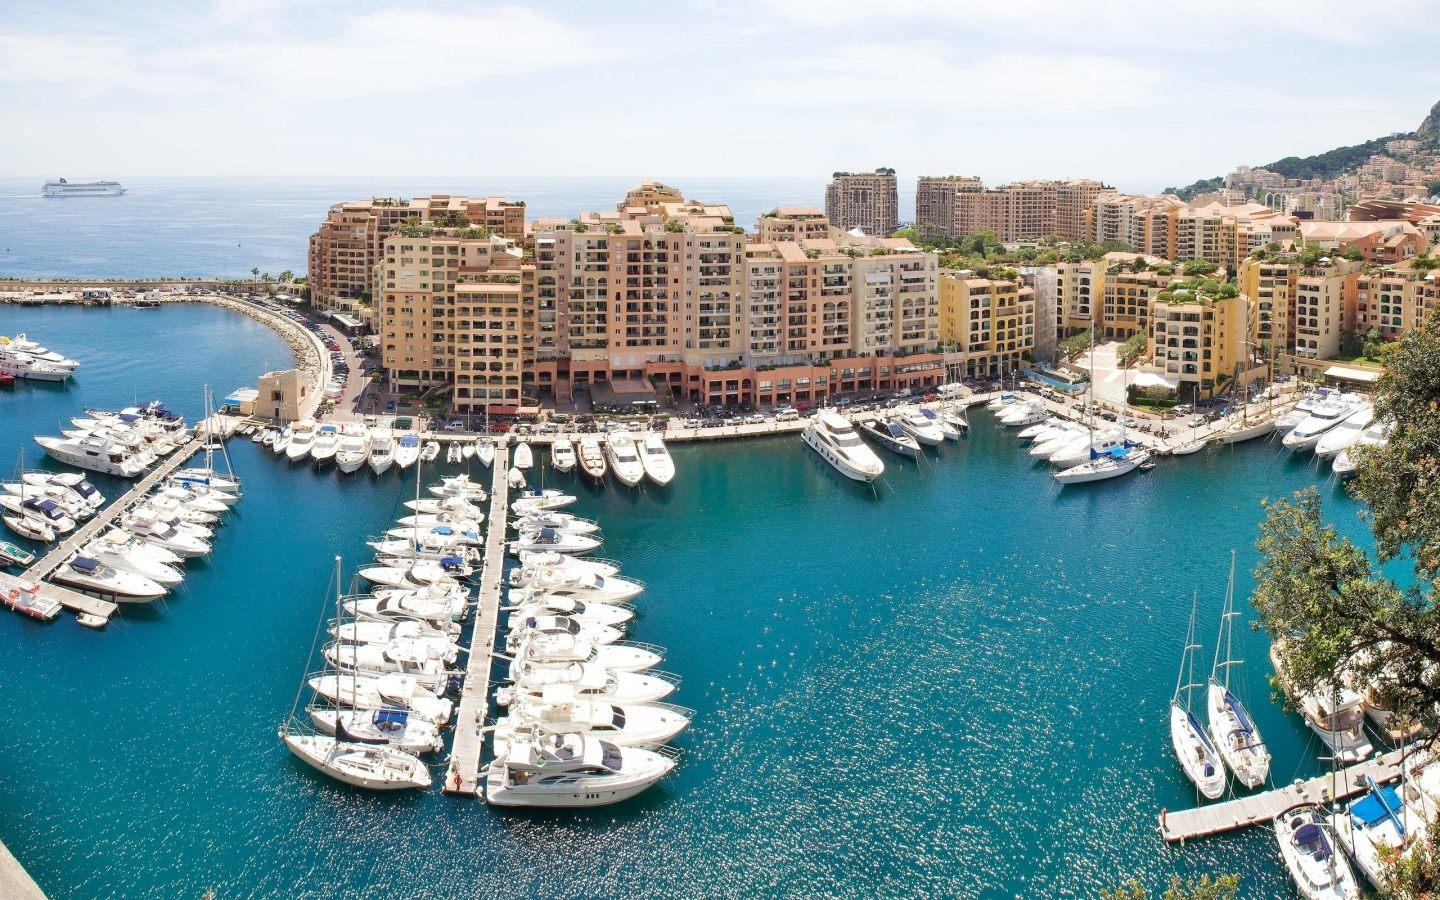 Monaco Port for 1440 x 900 widescreen resolution